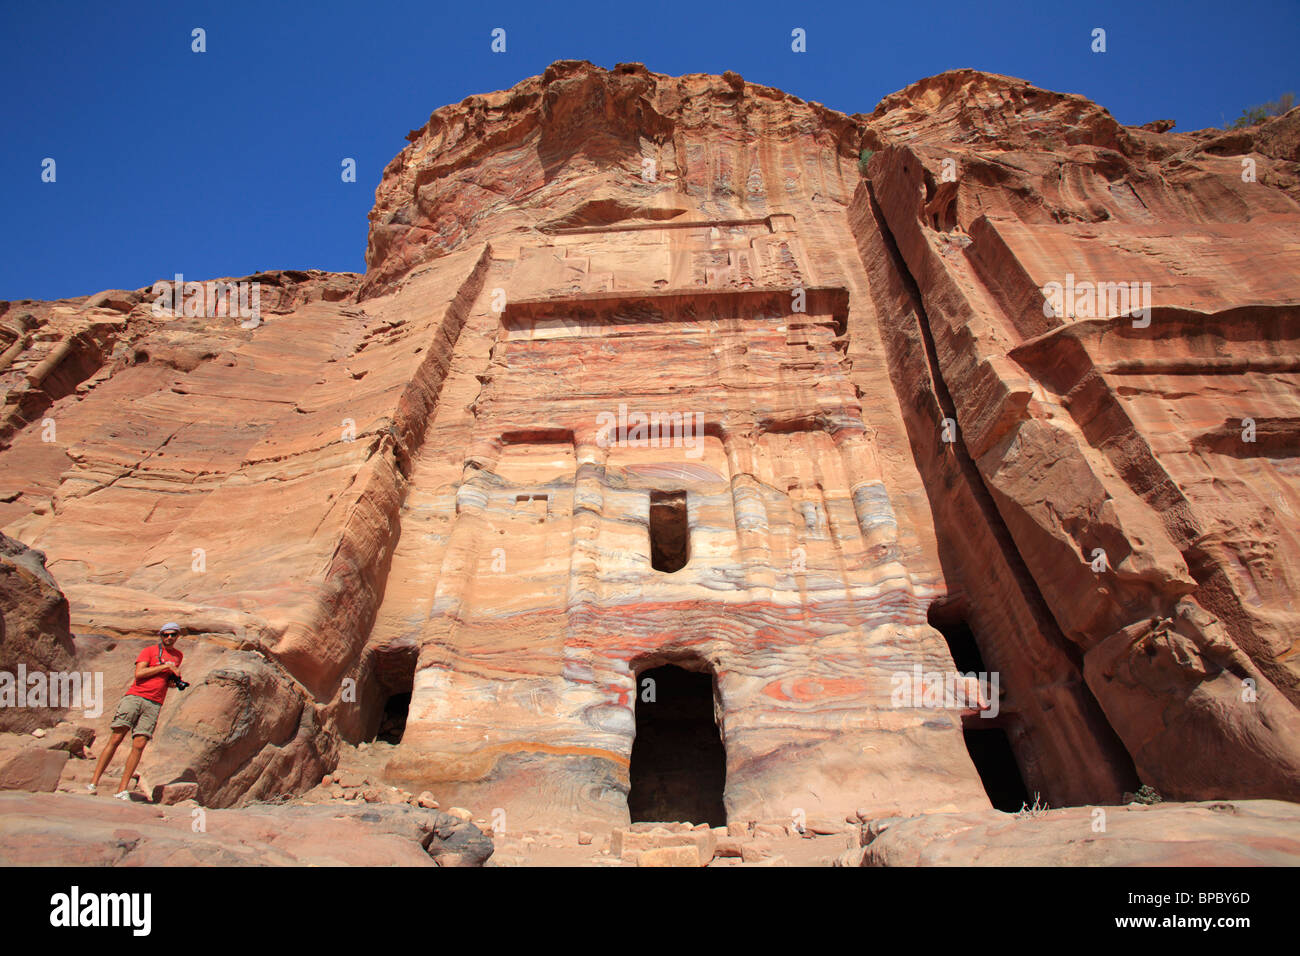 La tumba de la seda de las tumbas reales de Petra, Jordania Foto de stock